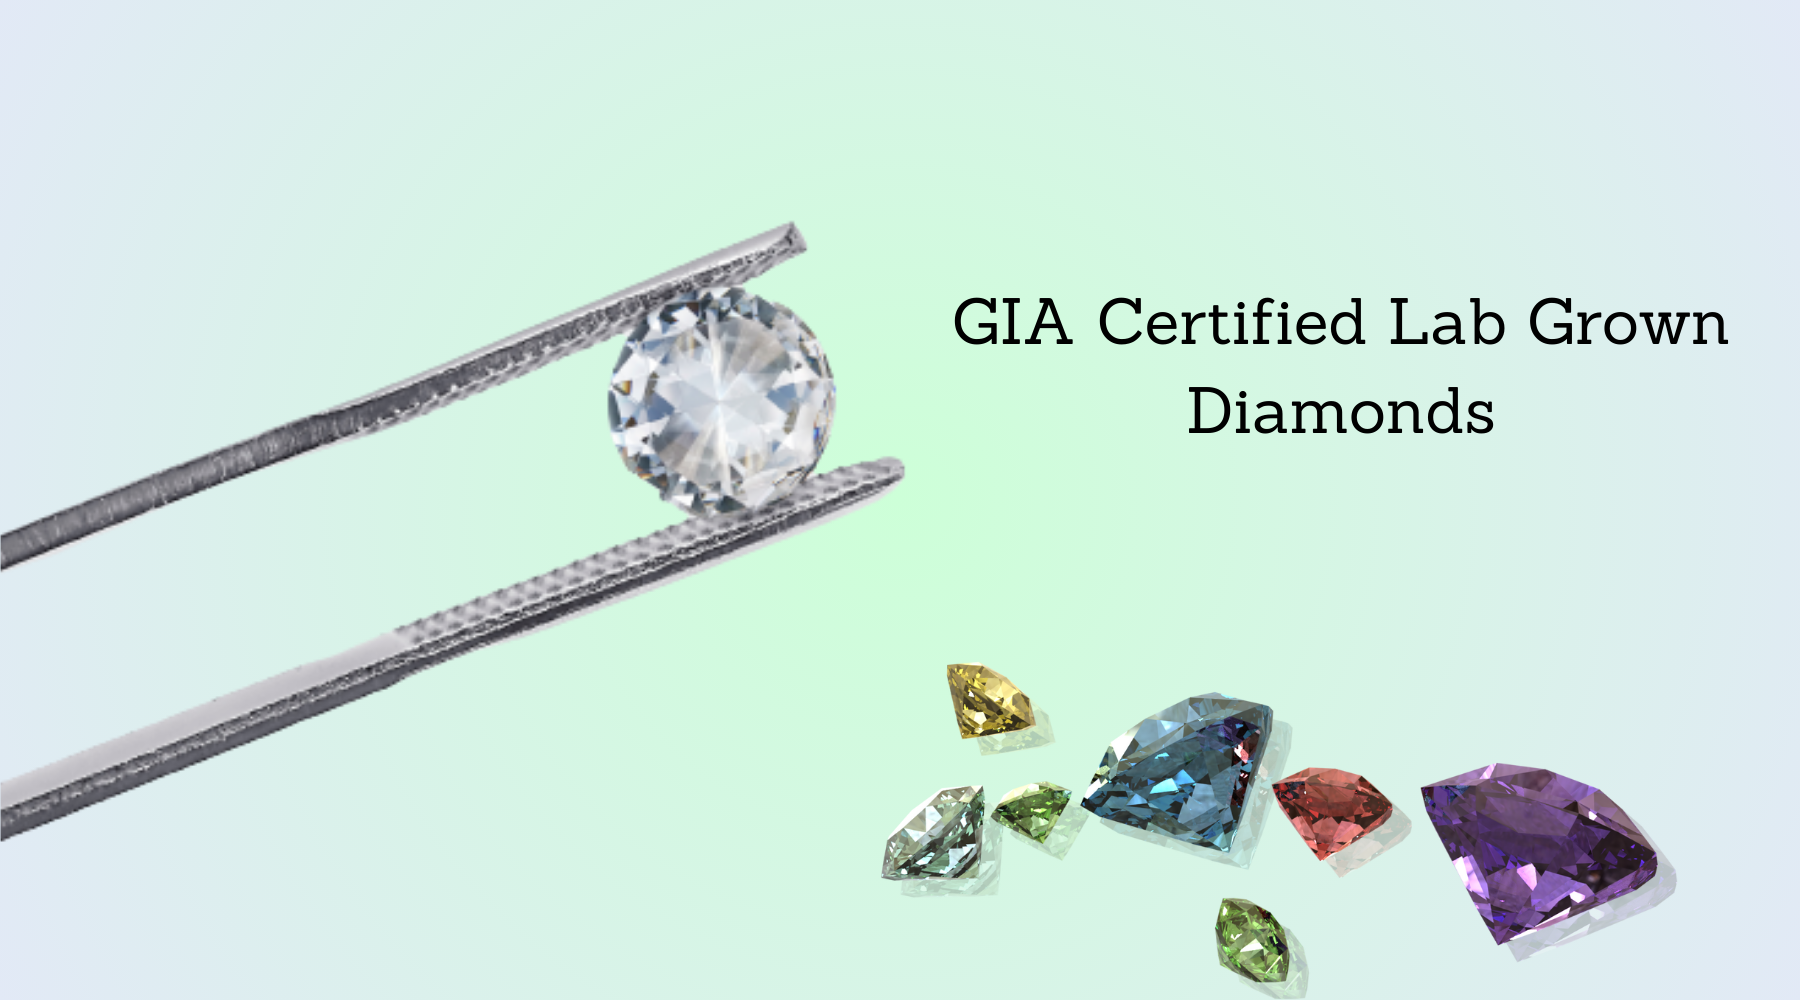 Does GIA certify lab diamonds?